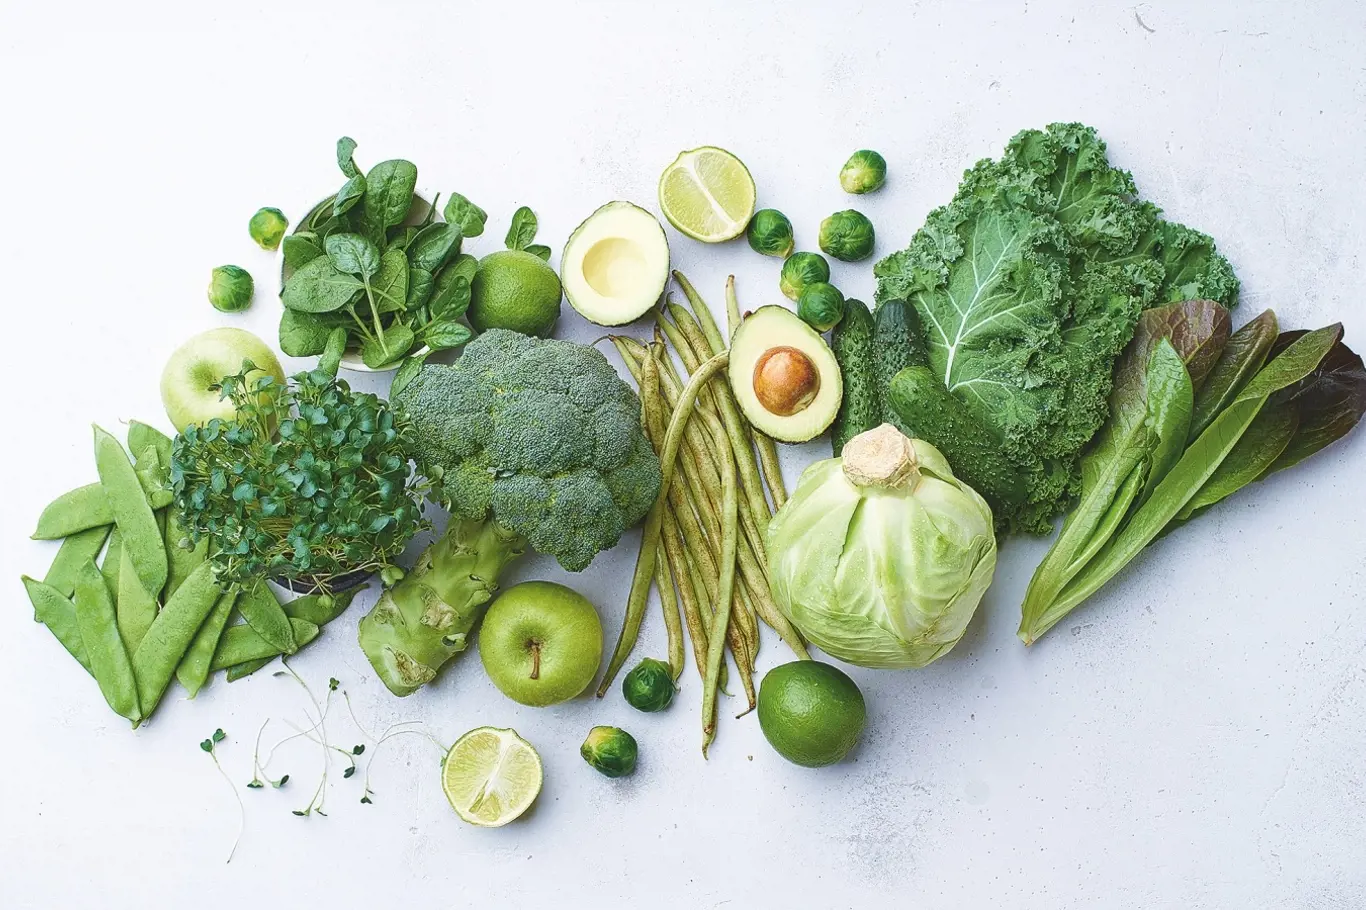 Musí zelená zelenina při přípravě ztratit barvu?